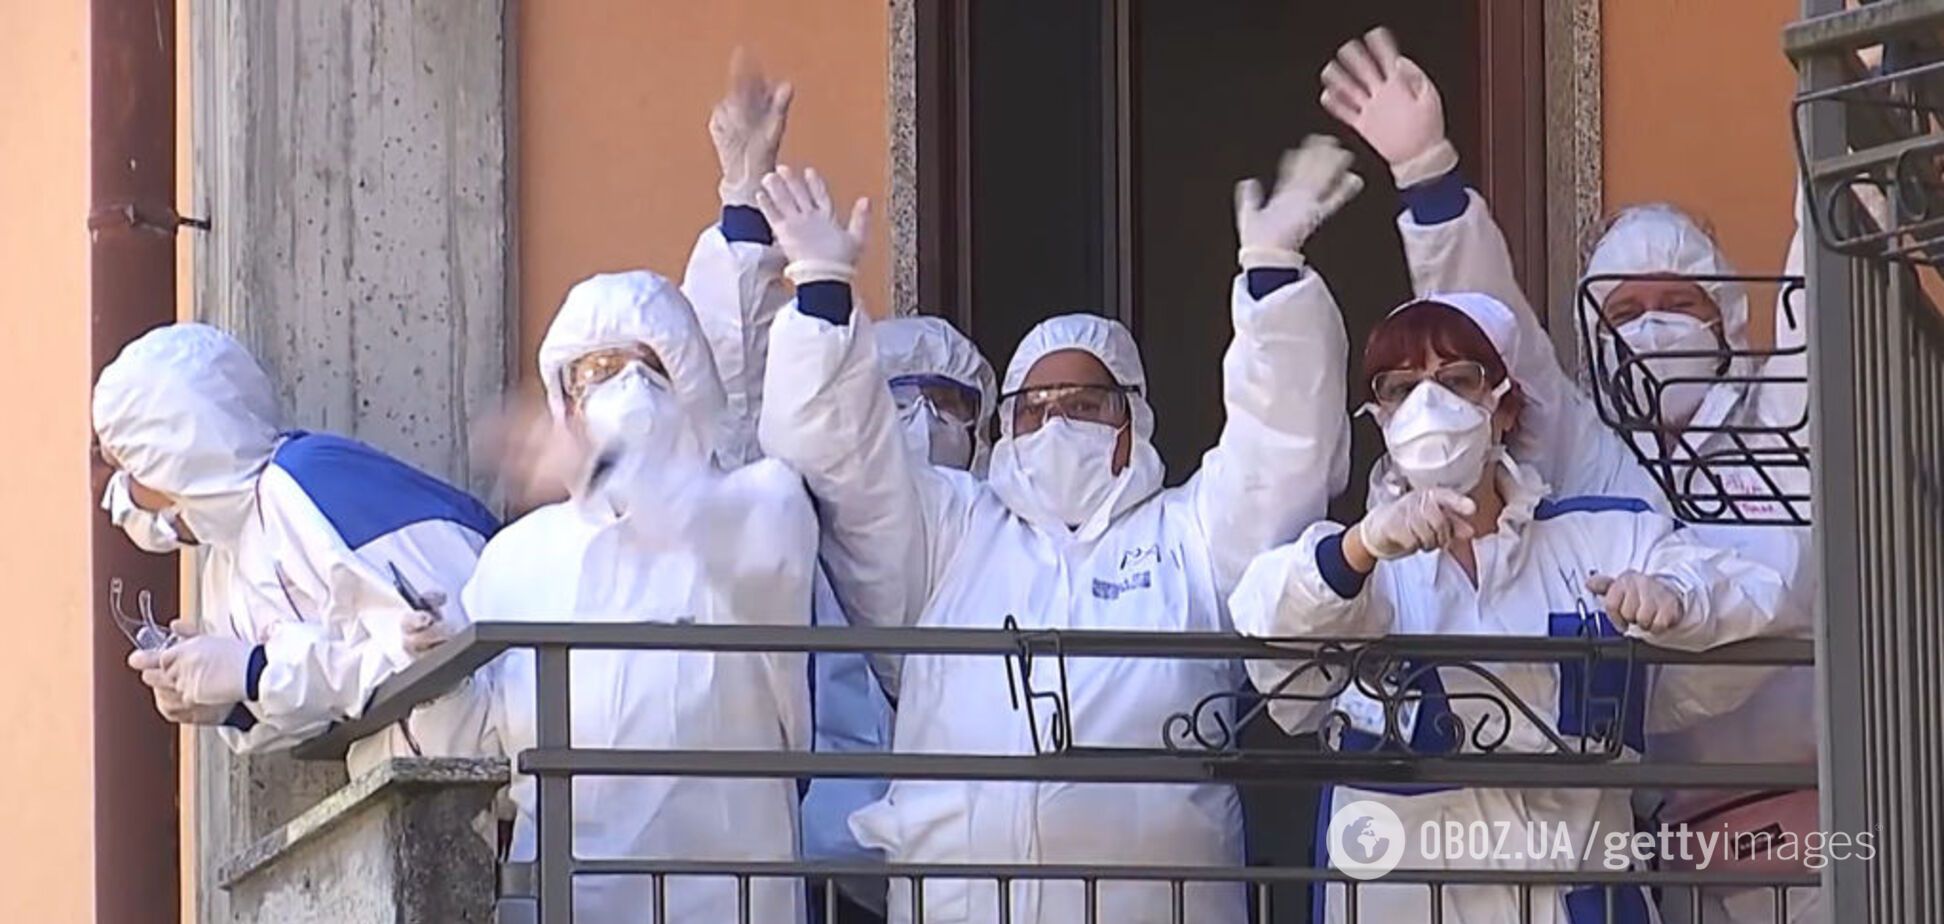 Вспышка коронавируса в Италии достигла пика: медики заявили о позитивном сигнале